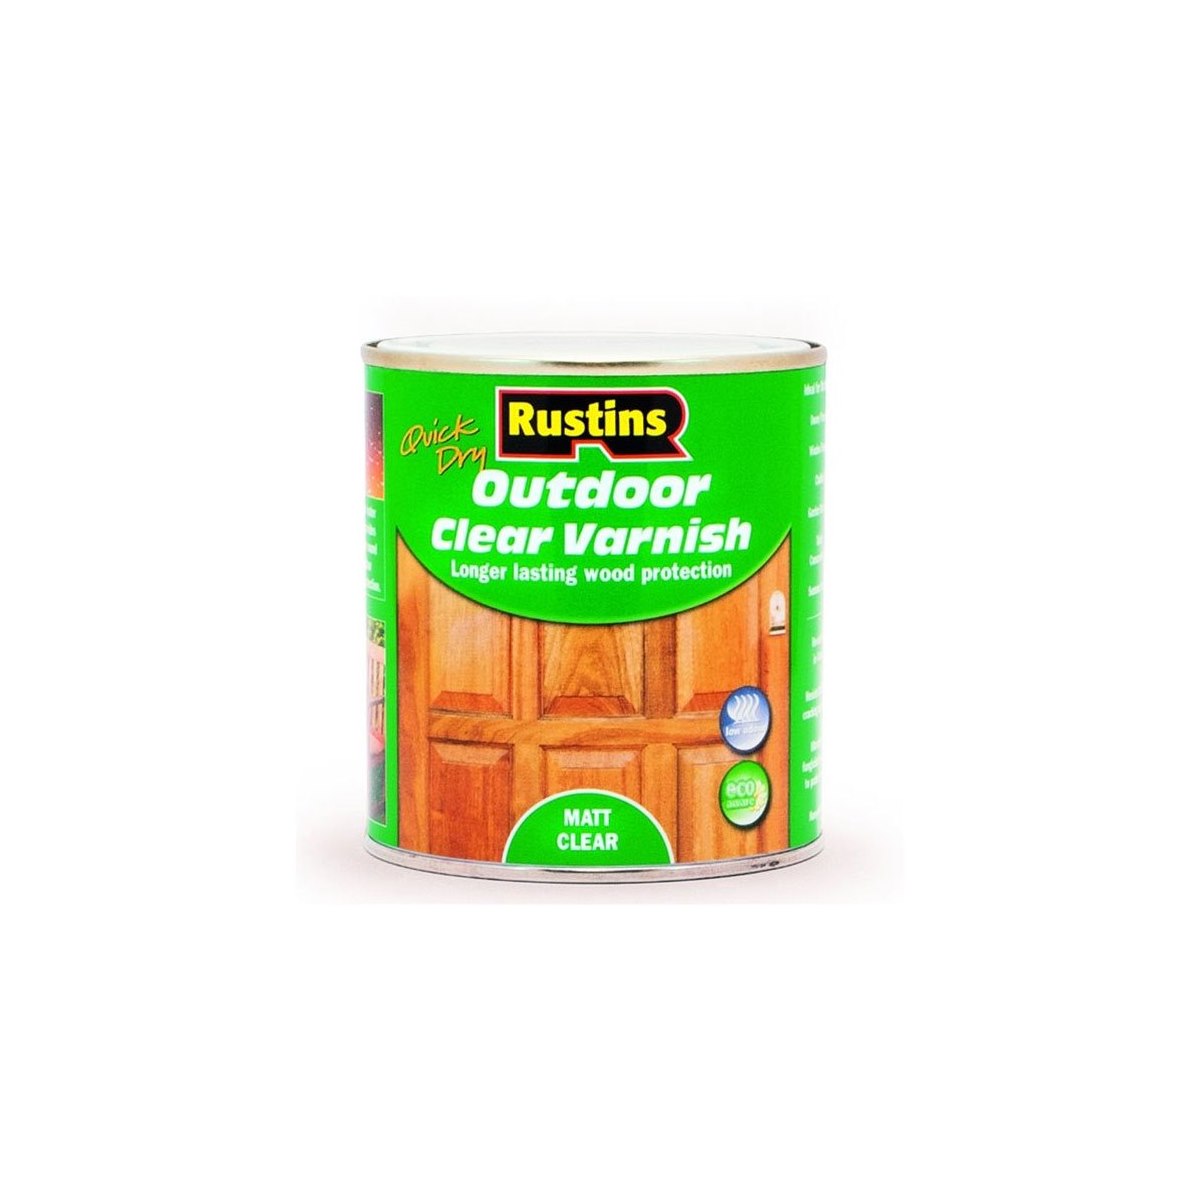 Rustins Quick Dry Outdoor Clear Varnish Matt 250ml